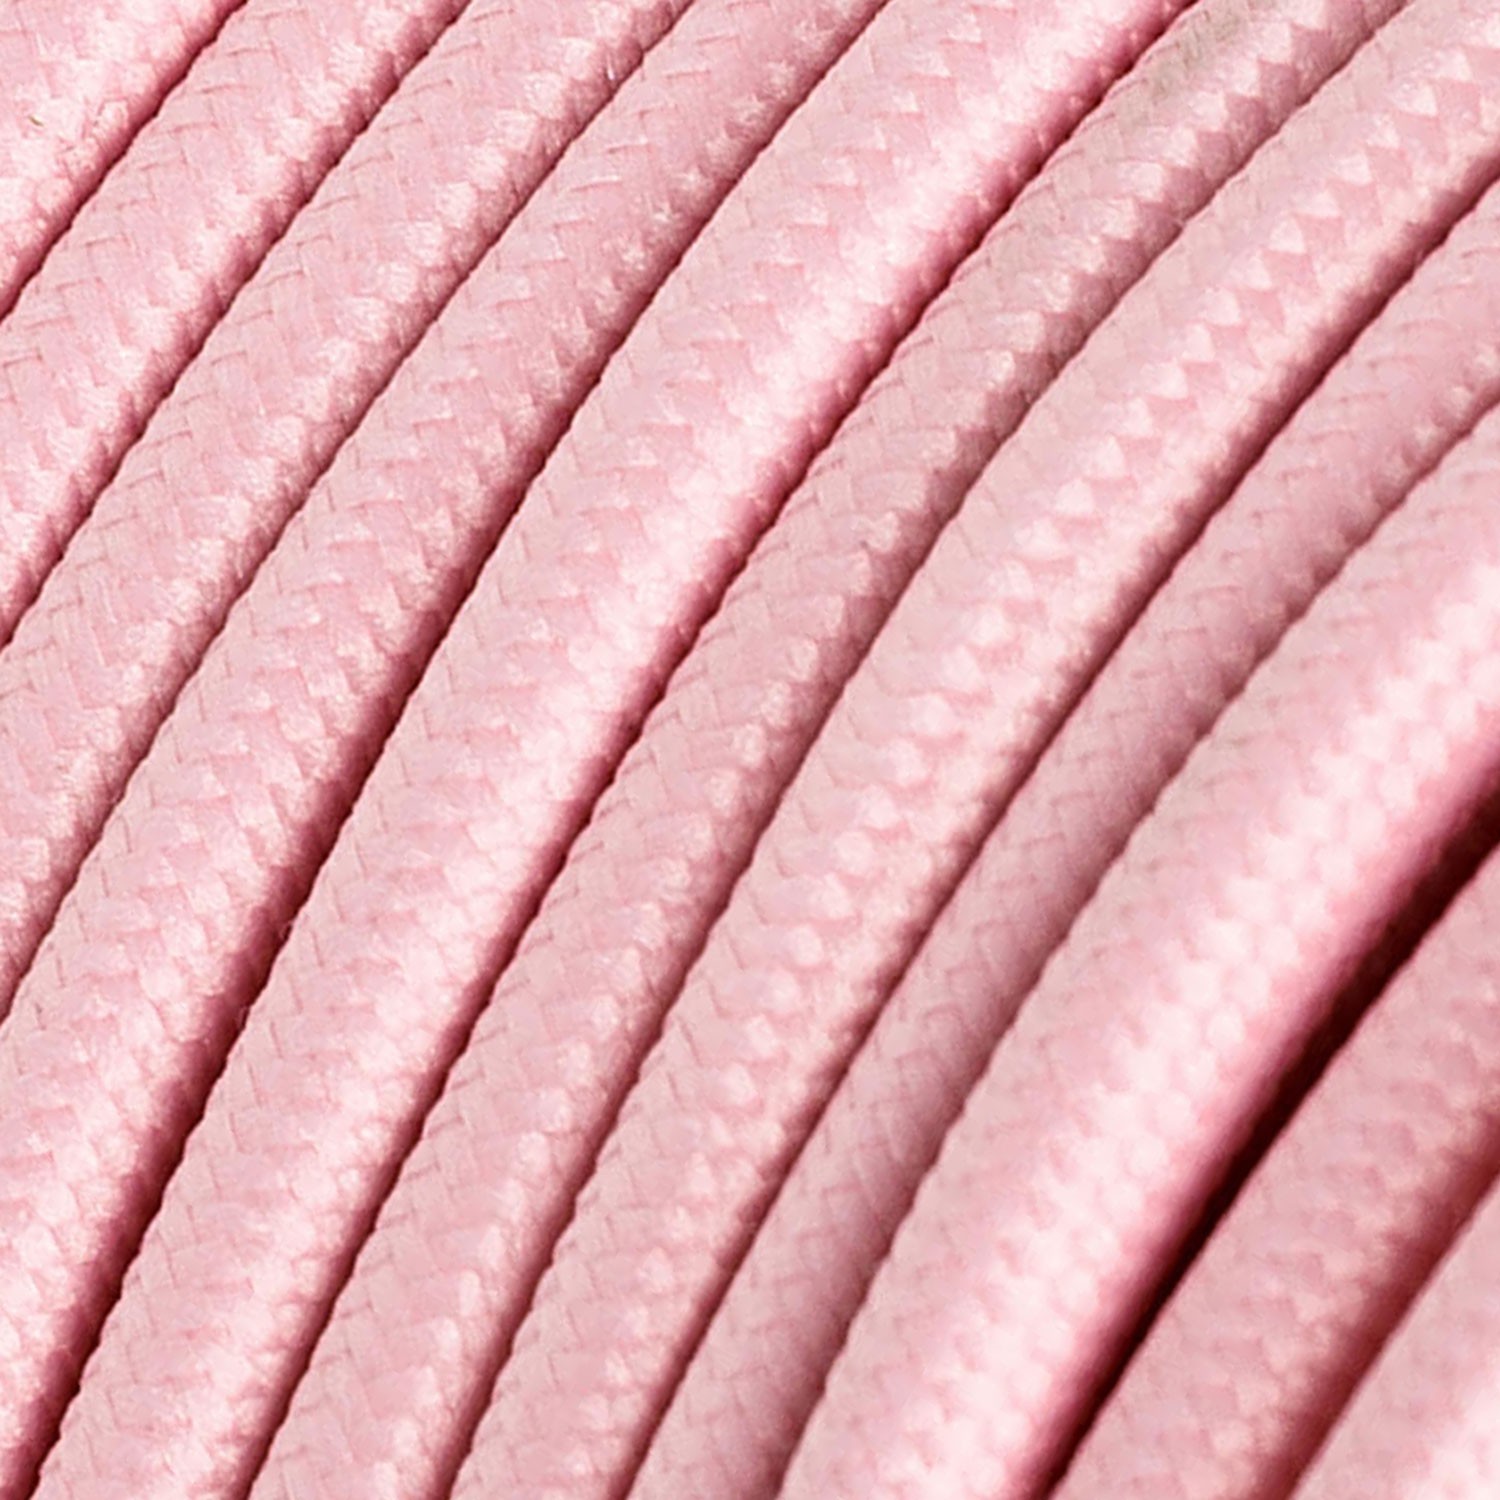 Okrúhly textilný elektrický kábel, umelý hodváb, jednofarebný, RM16 Ružová